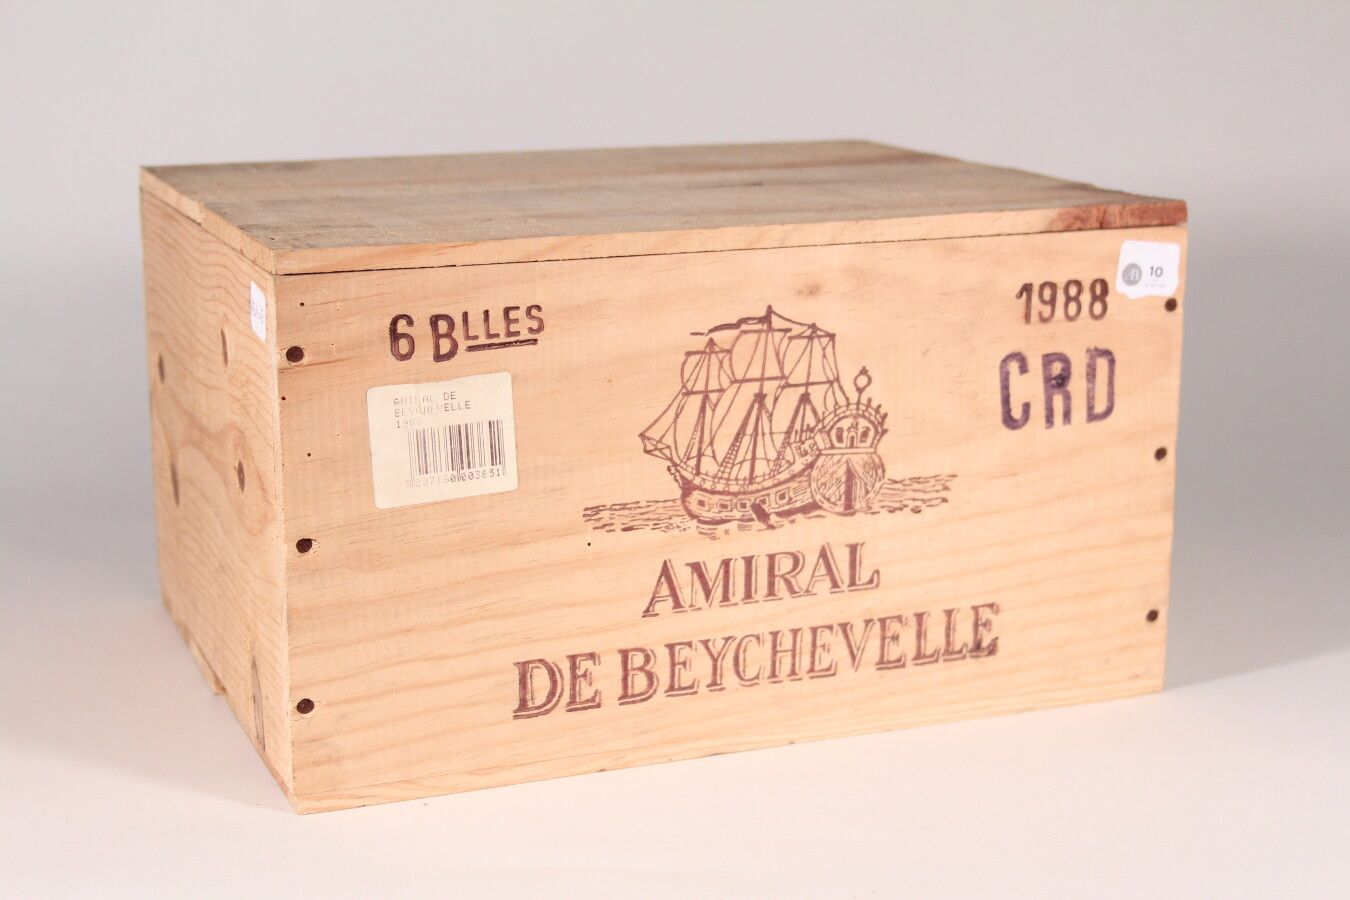 Null 1988 - Amiral de Beychevelle

Saint-Julien Rouge - 6 blles CBO